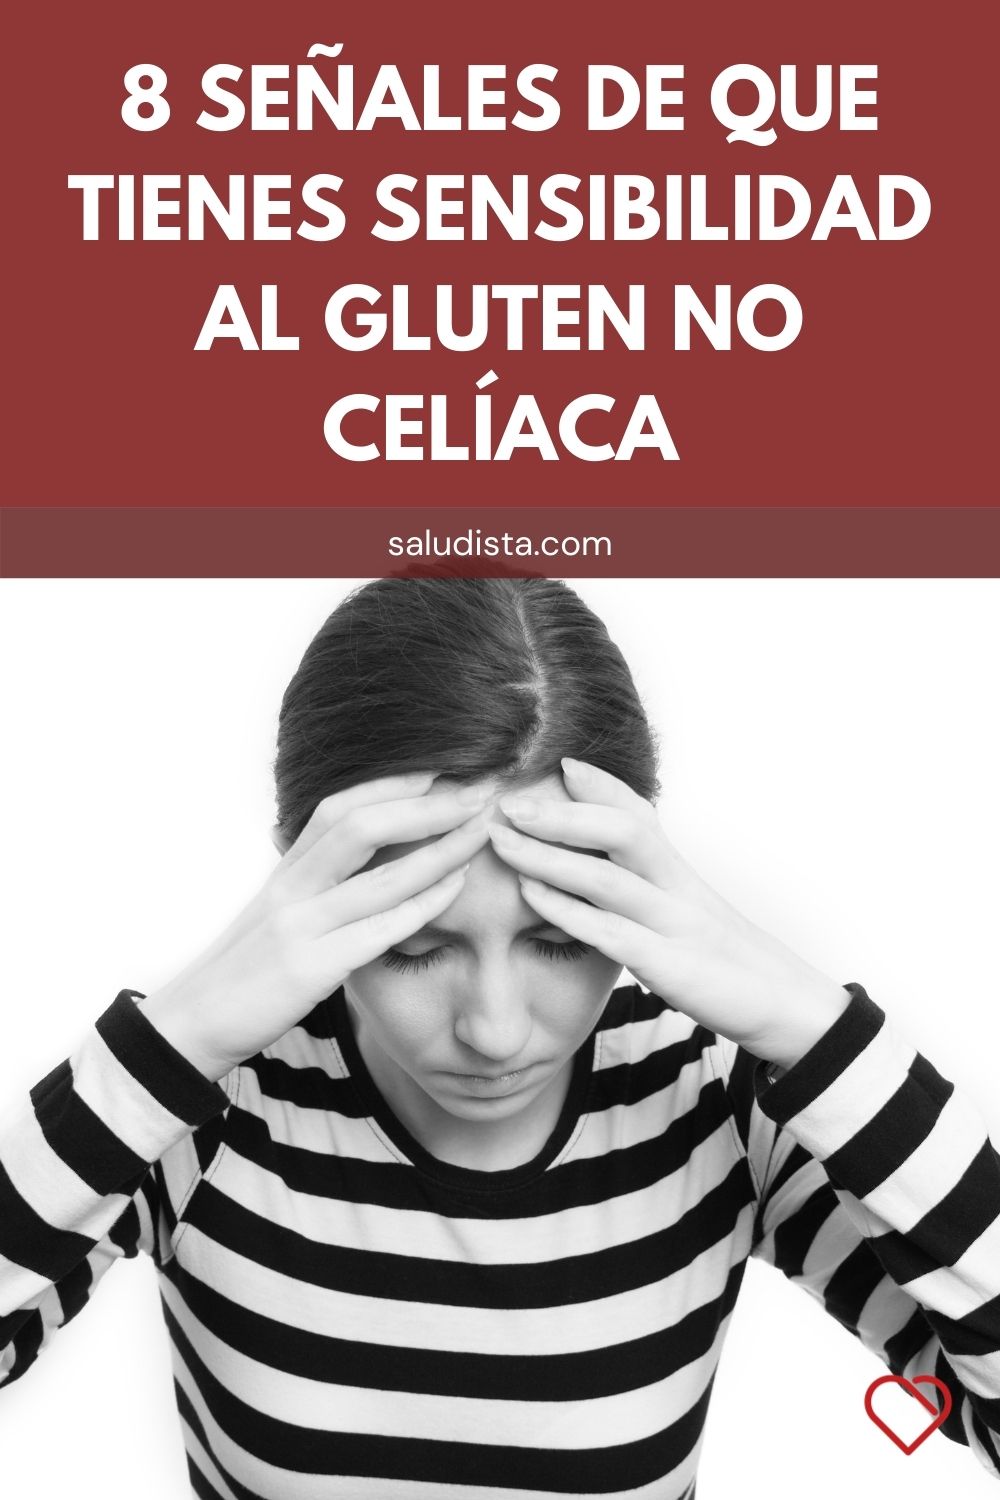 8 señales de que tienes sensibilidad al gluten no celíaca